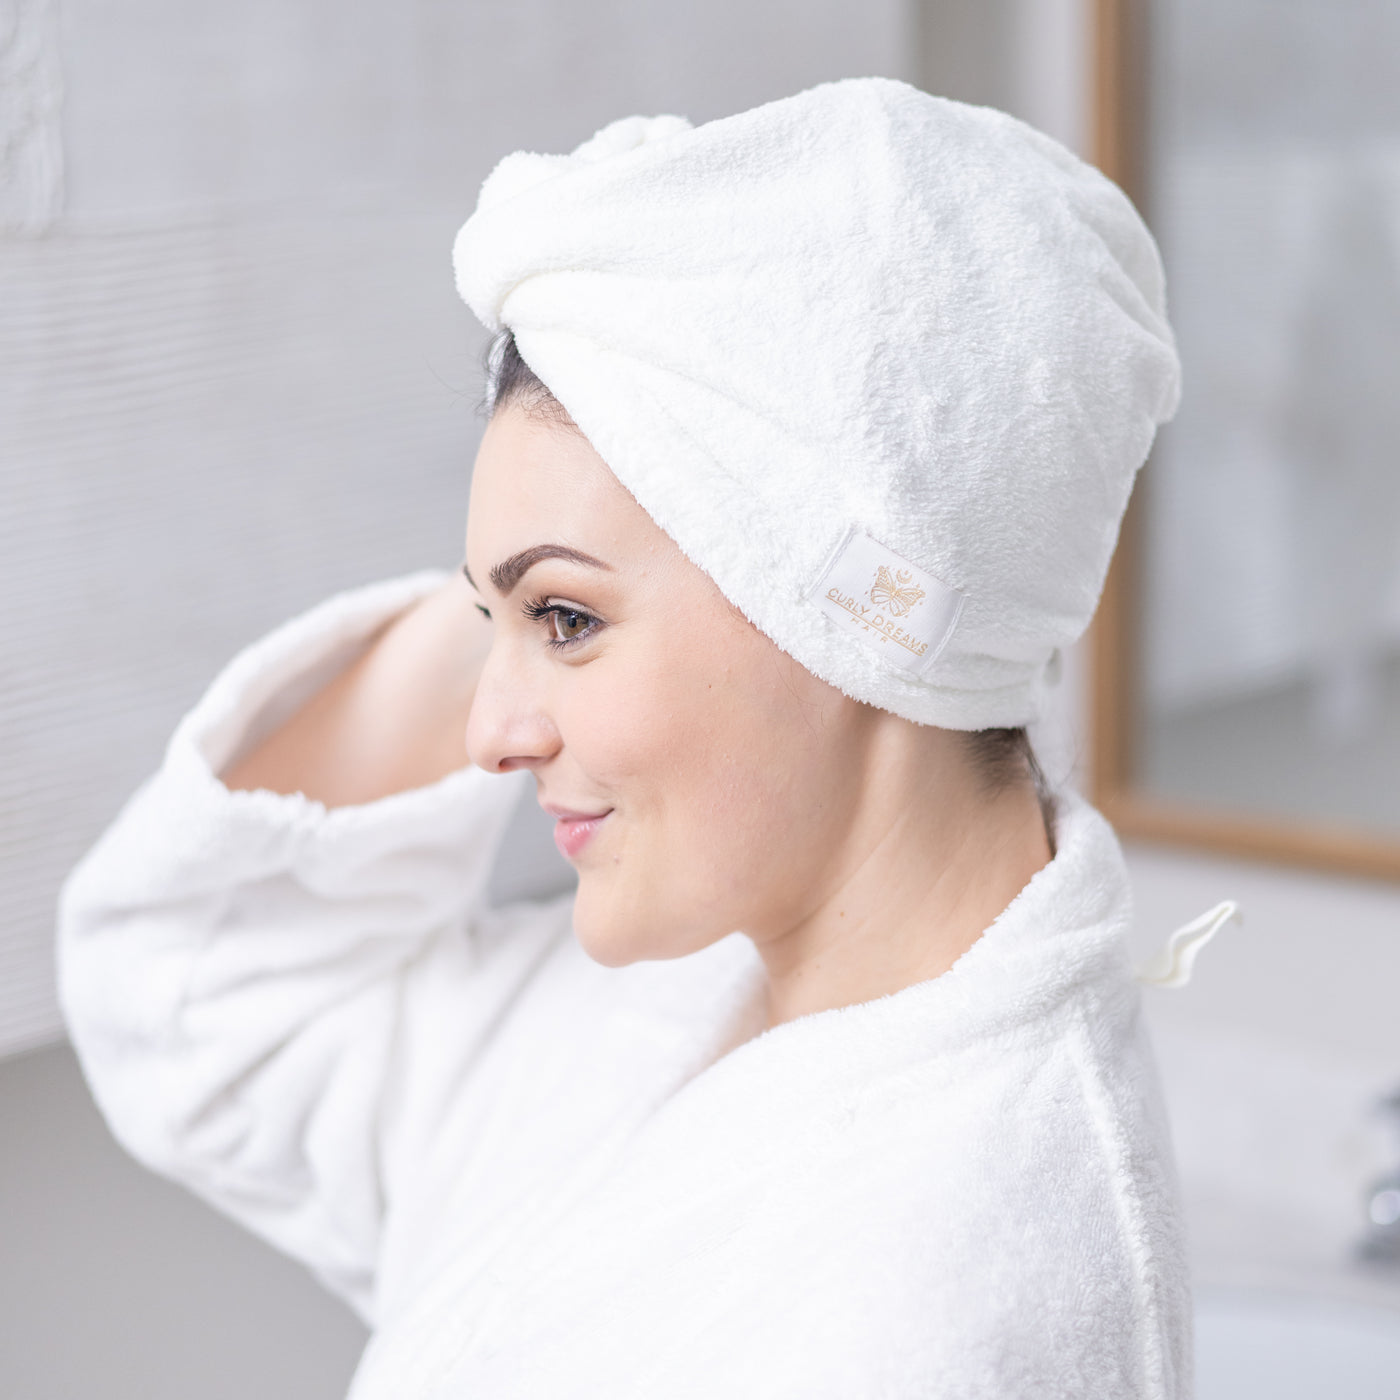 Asciugamano per capelli - turbante 100% microfibra (Bianca)